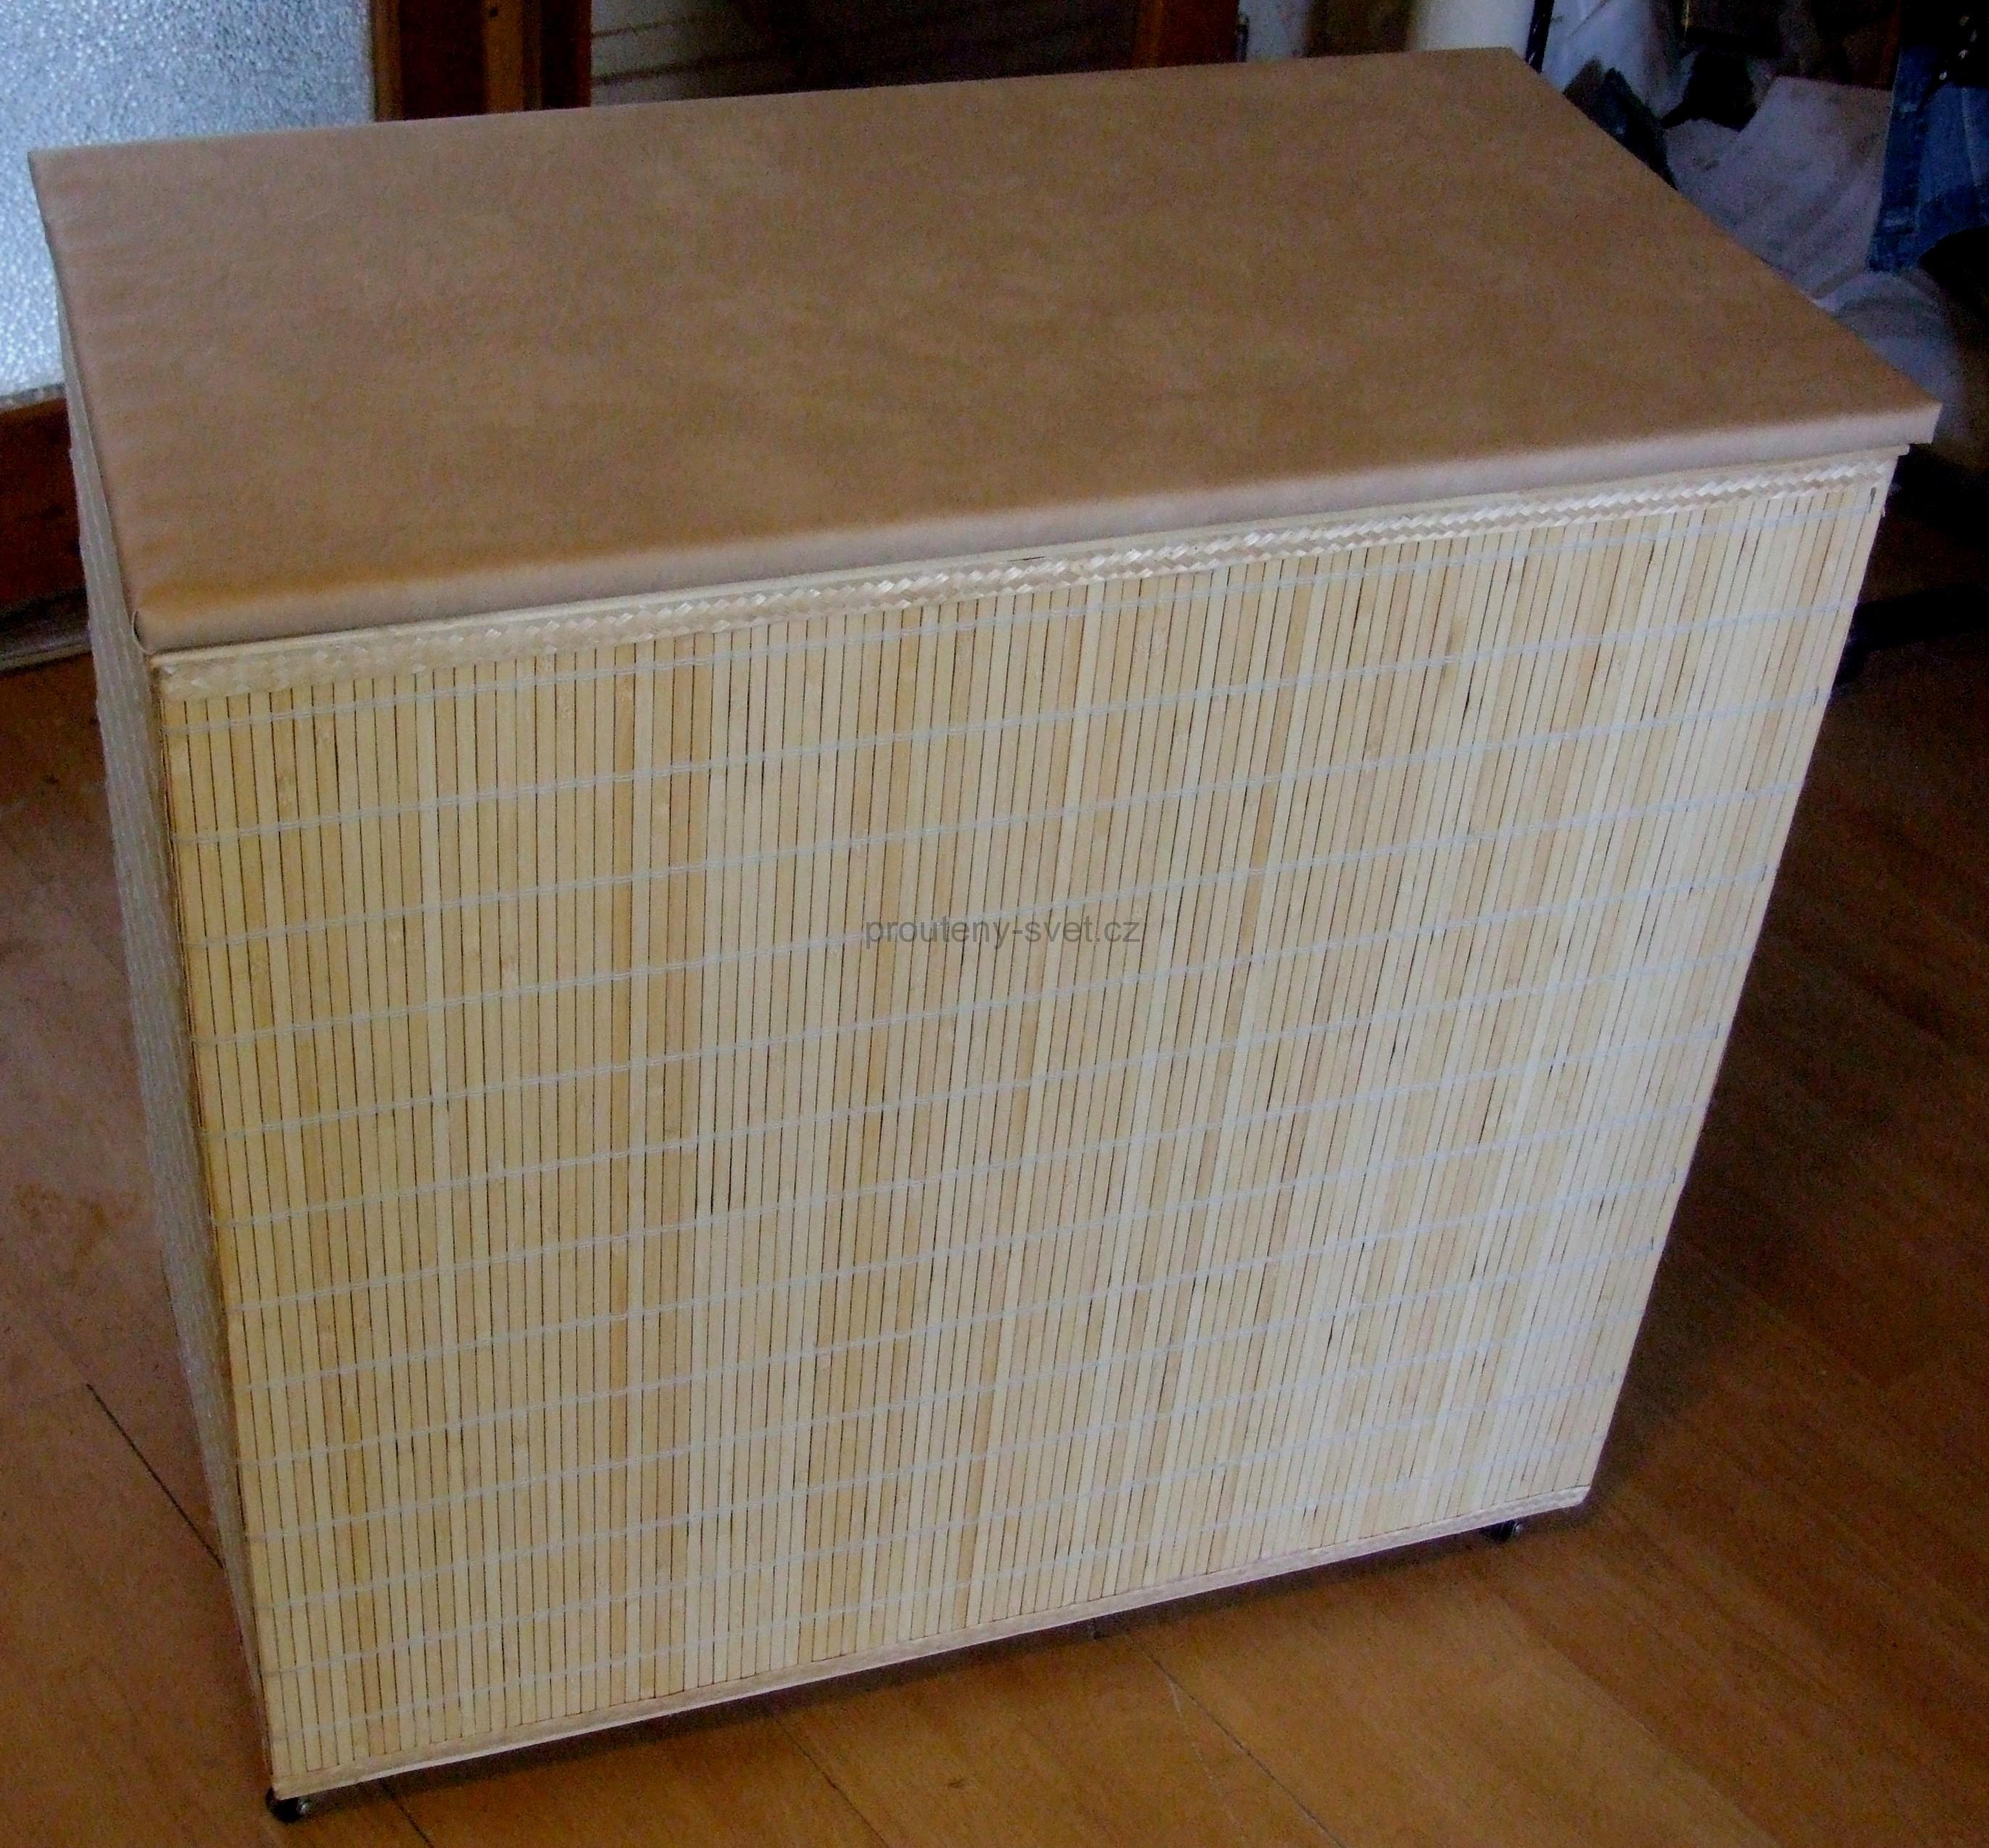 Koš na prádlo - lavička, bambus světlý, BK - 60